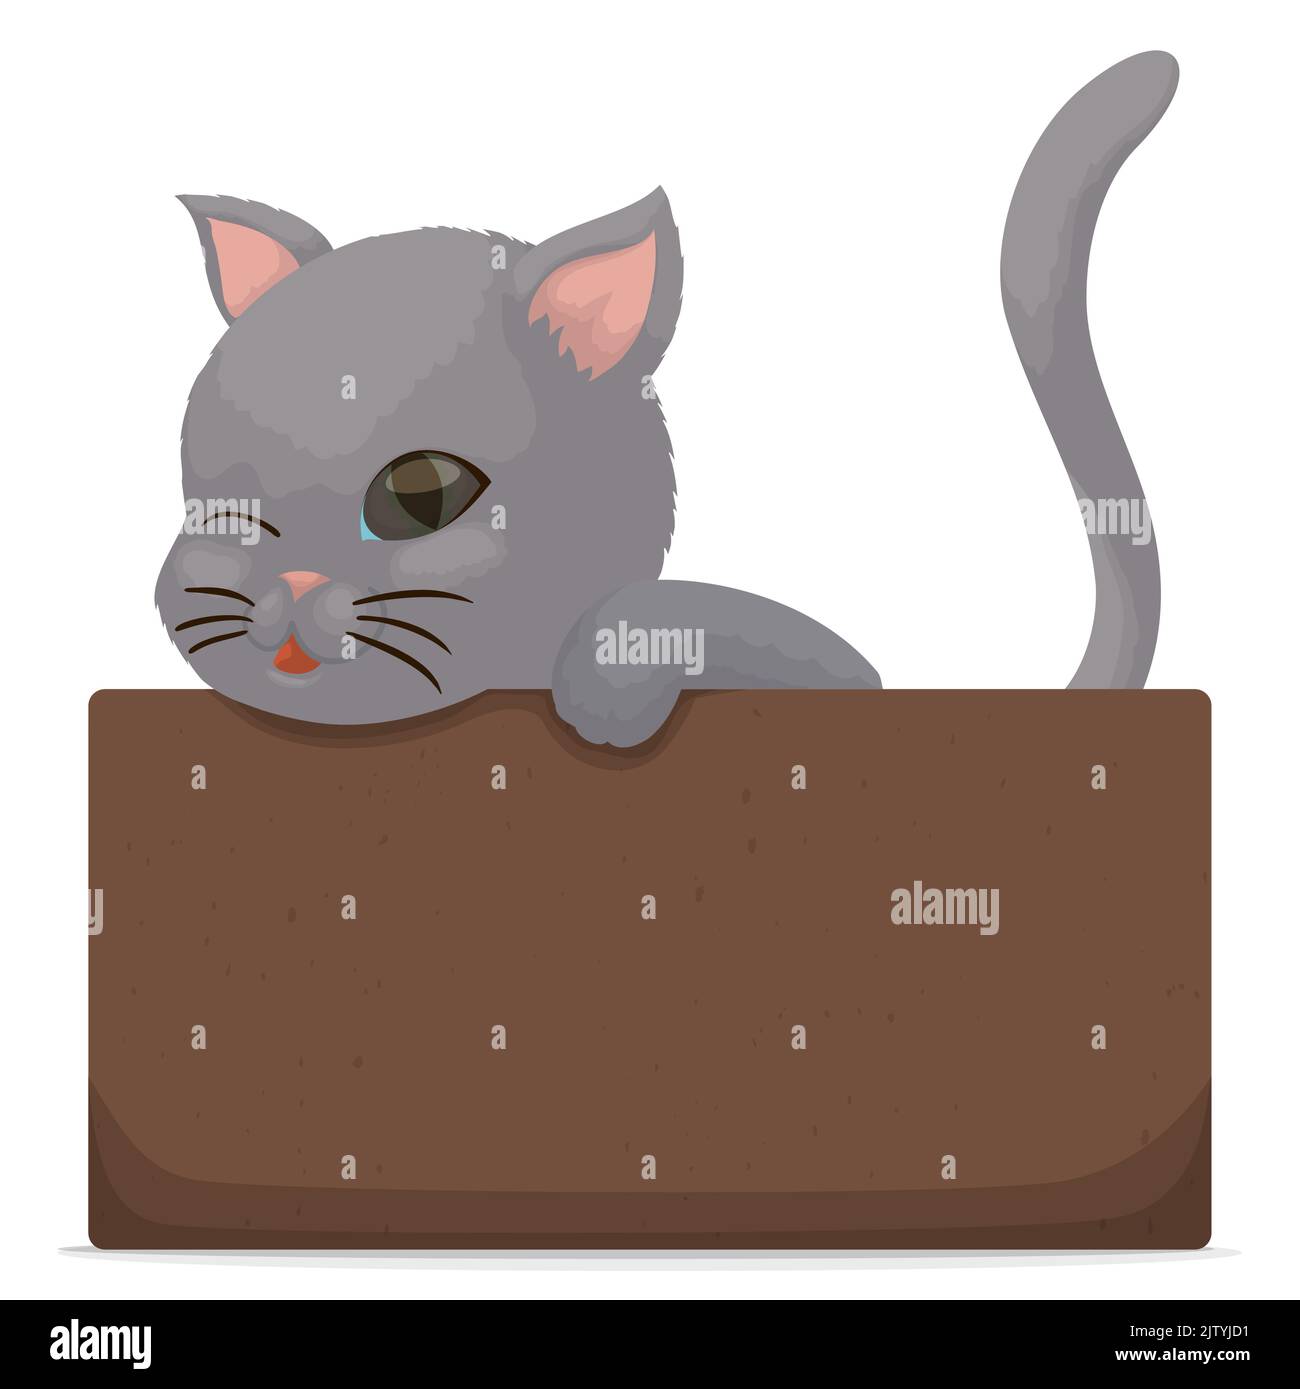 Un chaton gris affectueux aux yeux bleus, se tord à vous pendant qu'il attend à l'intérieur d'une boîte en carton. Illustration de Vecteur